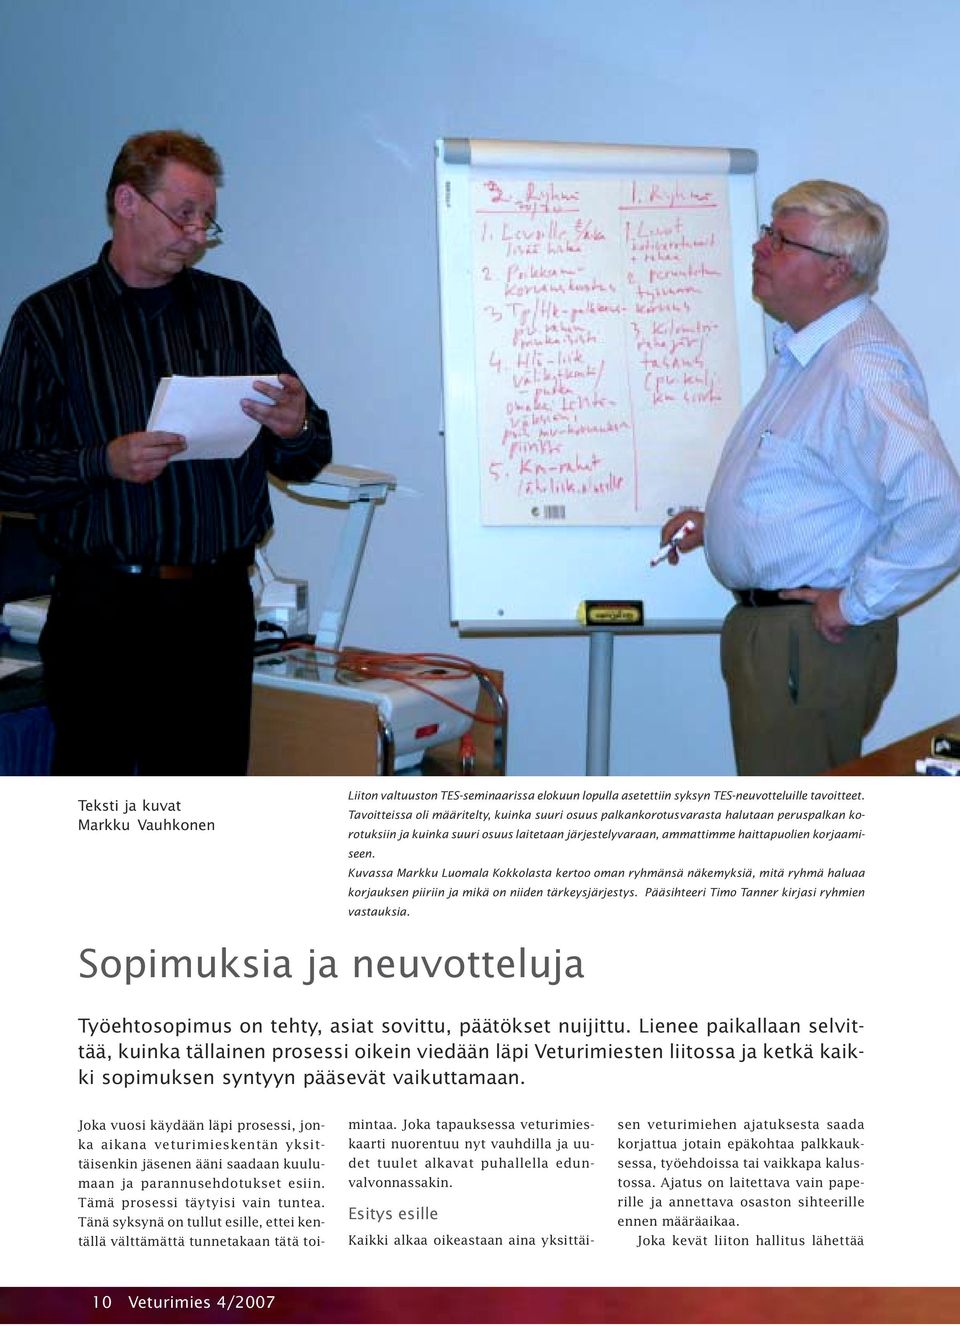 Kuvassa Markku Luomala Kokkolasta kertoo oman ryhmänsä näkemyksiä, mitä ryhmä haluaa korjauksen piiriin ja mikä on niiden tärkeysjärjestys. Pääsihteeri Timo Tanner kirjasi ryhmien vastauksia.